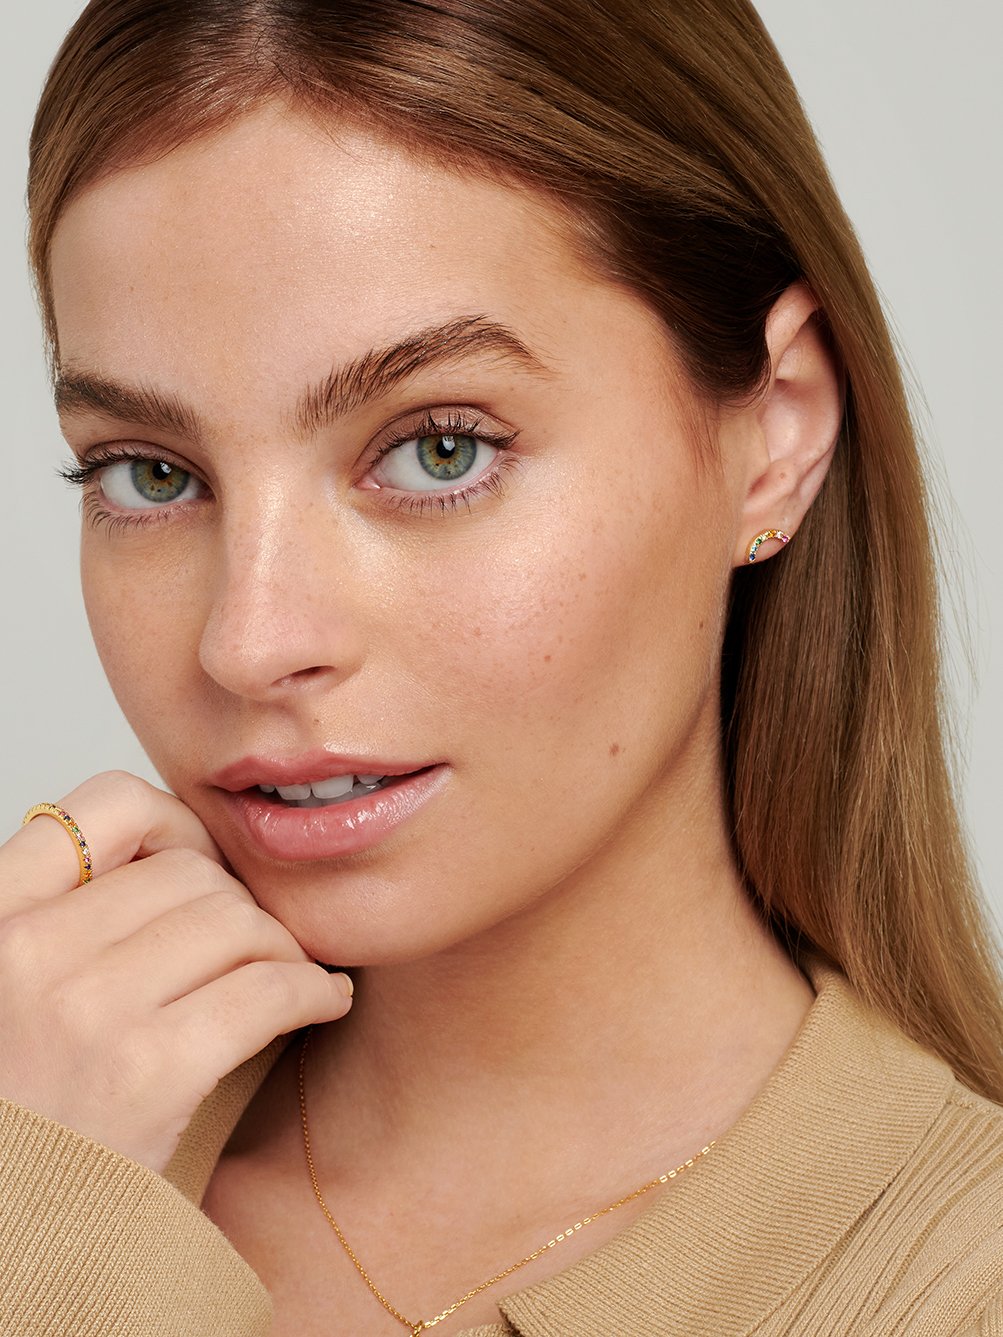 Female model wearing rainbow stud earrings in her earlobe piercing.